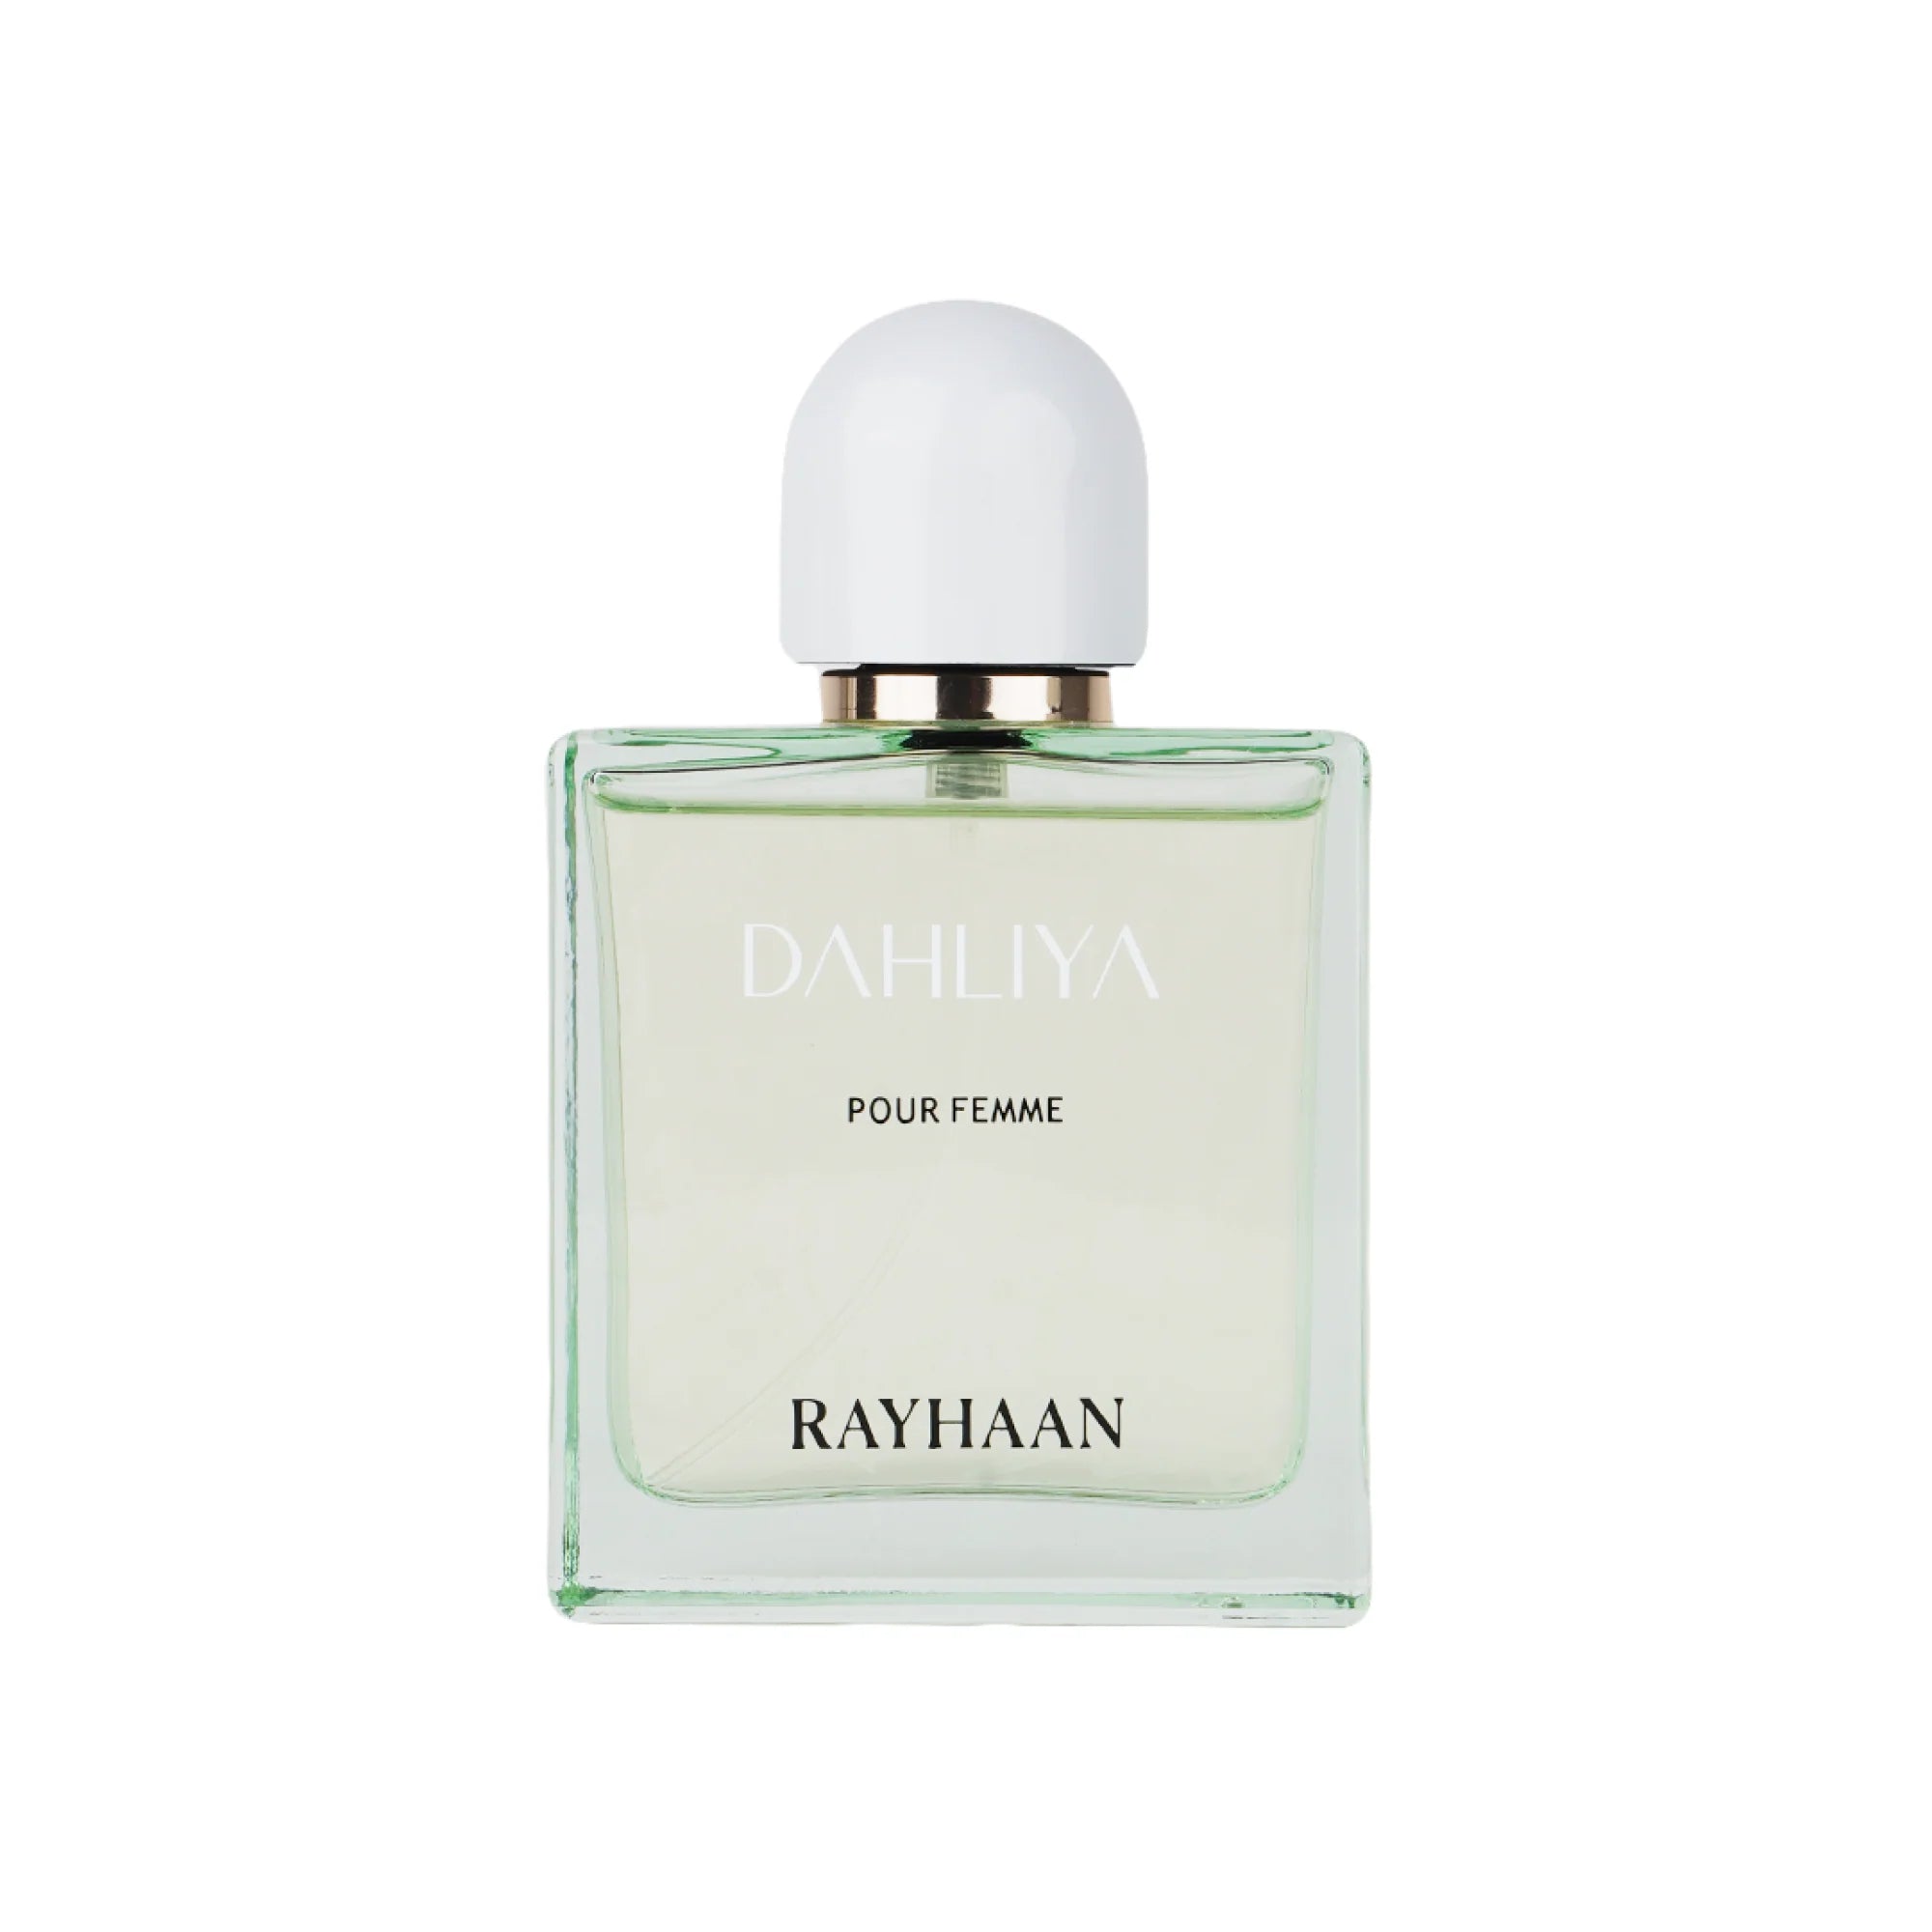 DAHLIYA - Rayhaan Perfumes